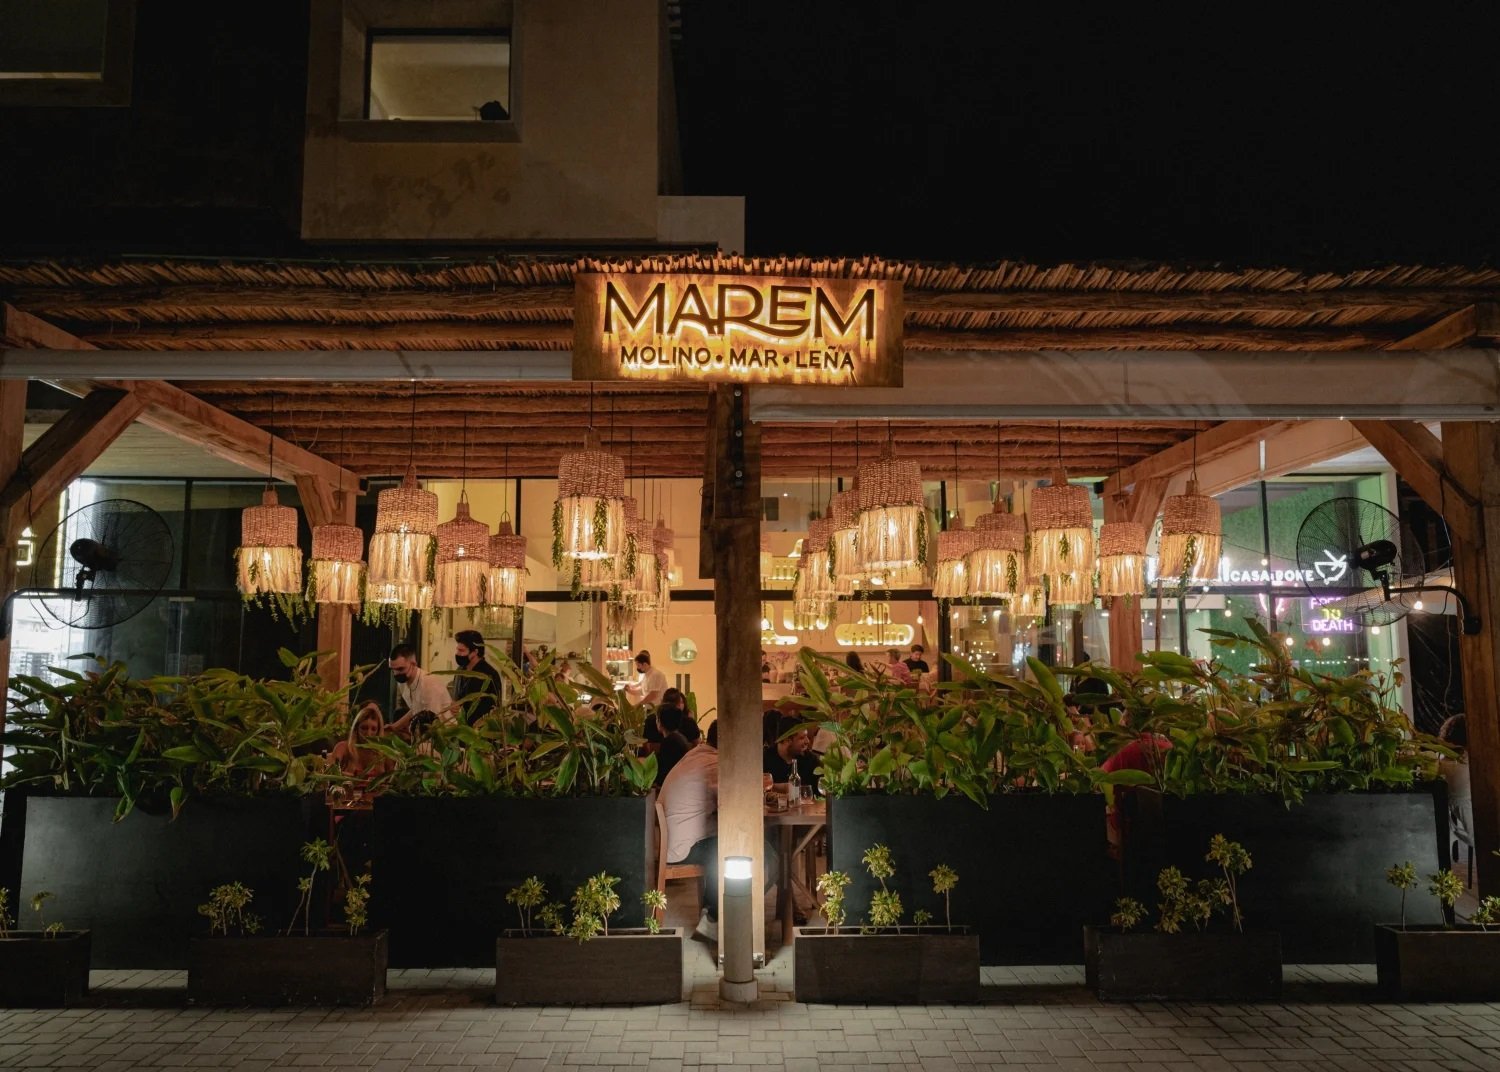 Restaurants in Tulum, Mexico